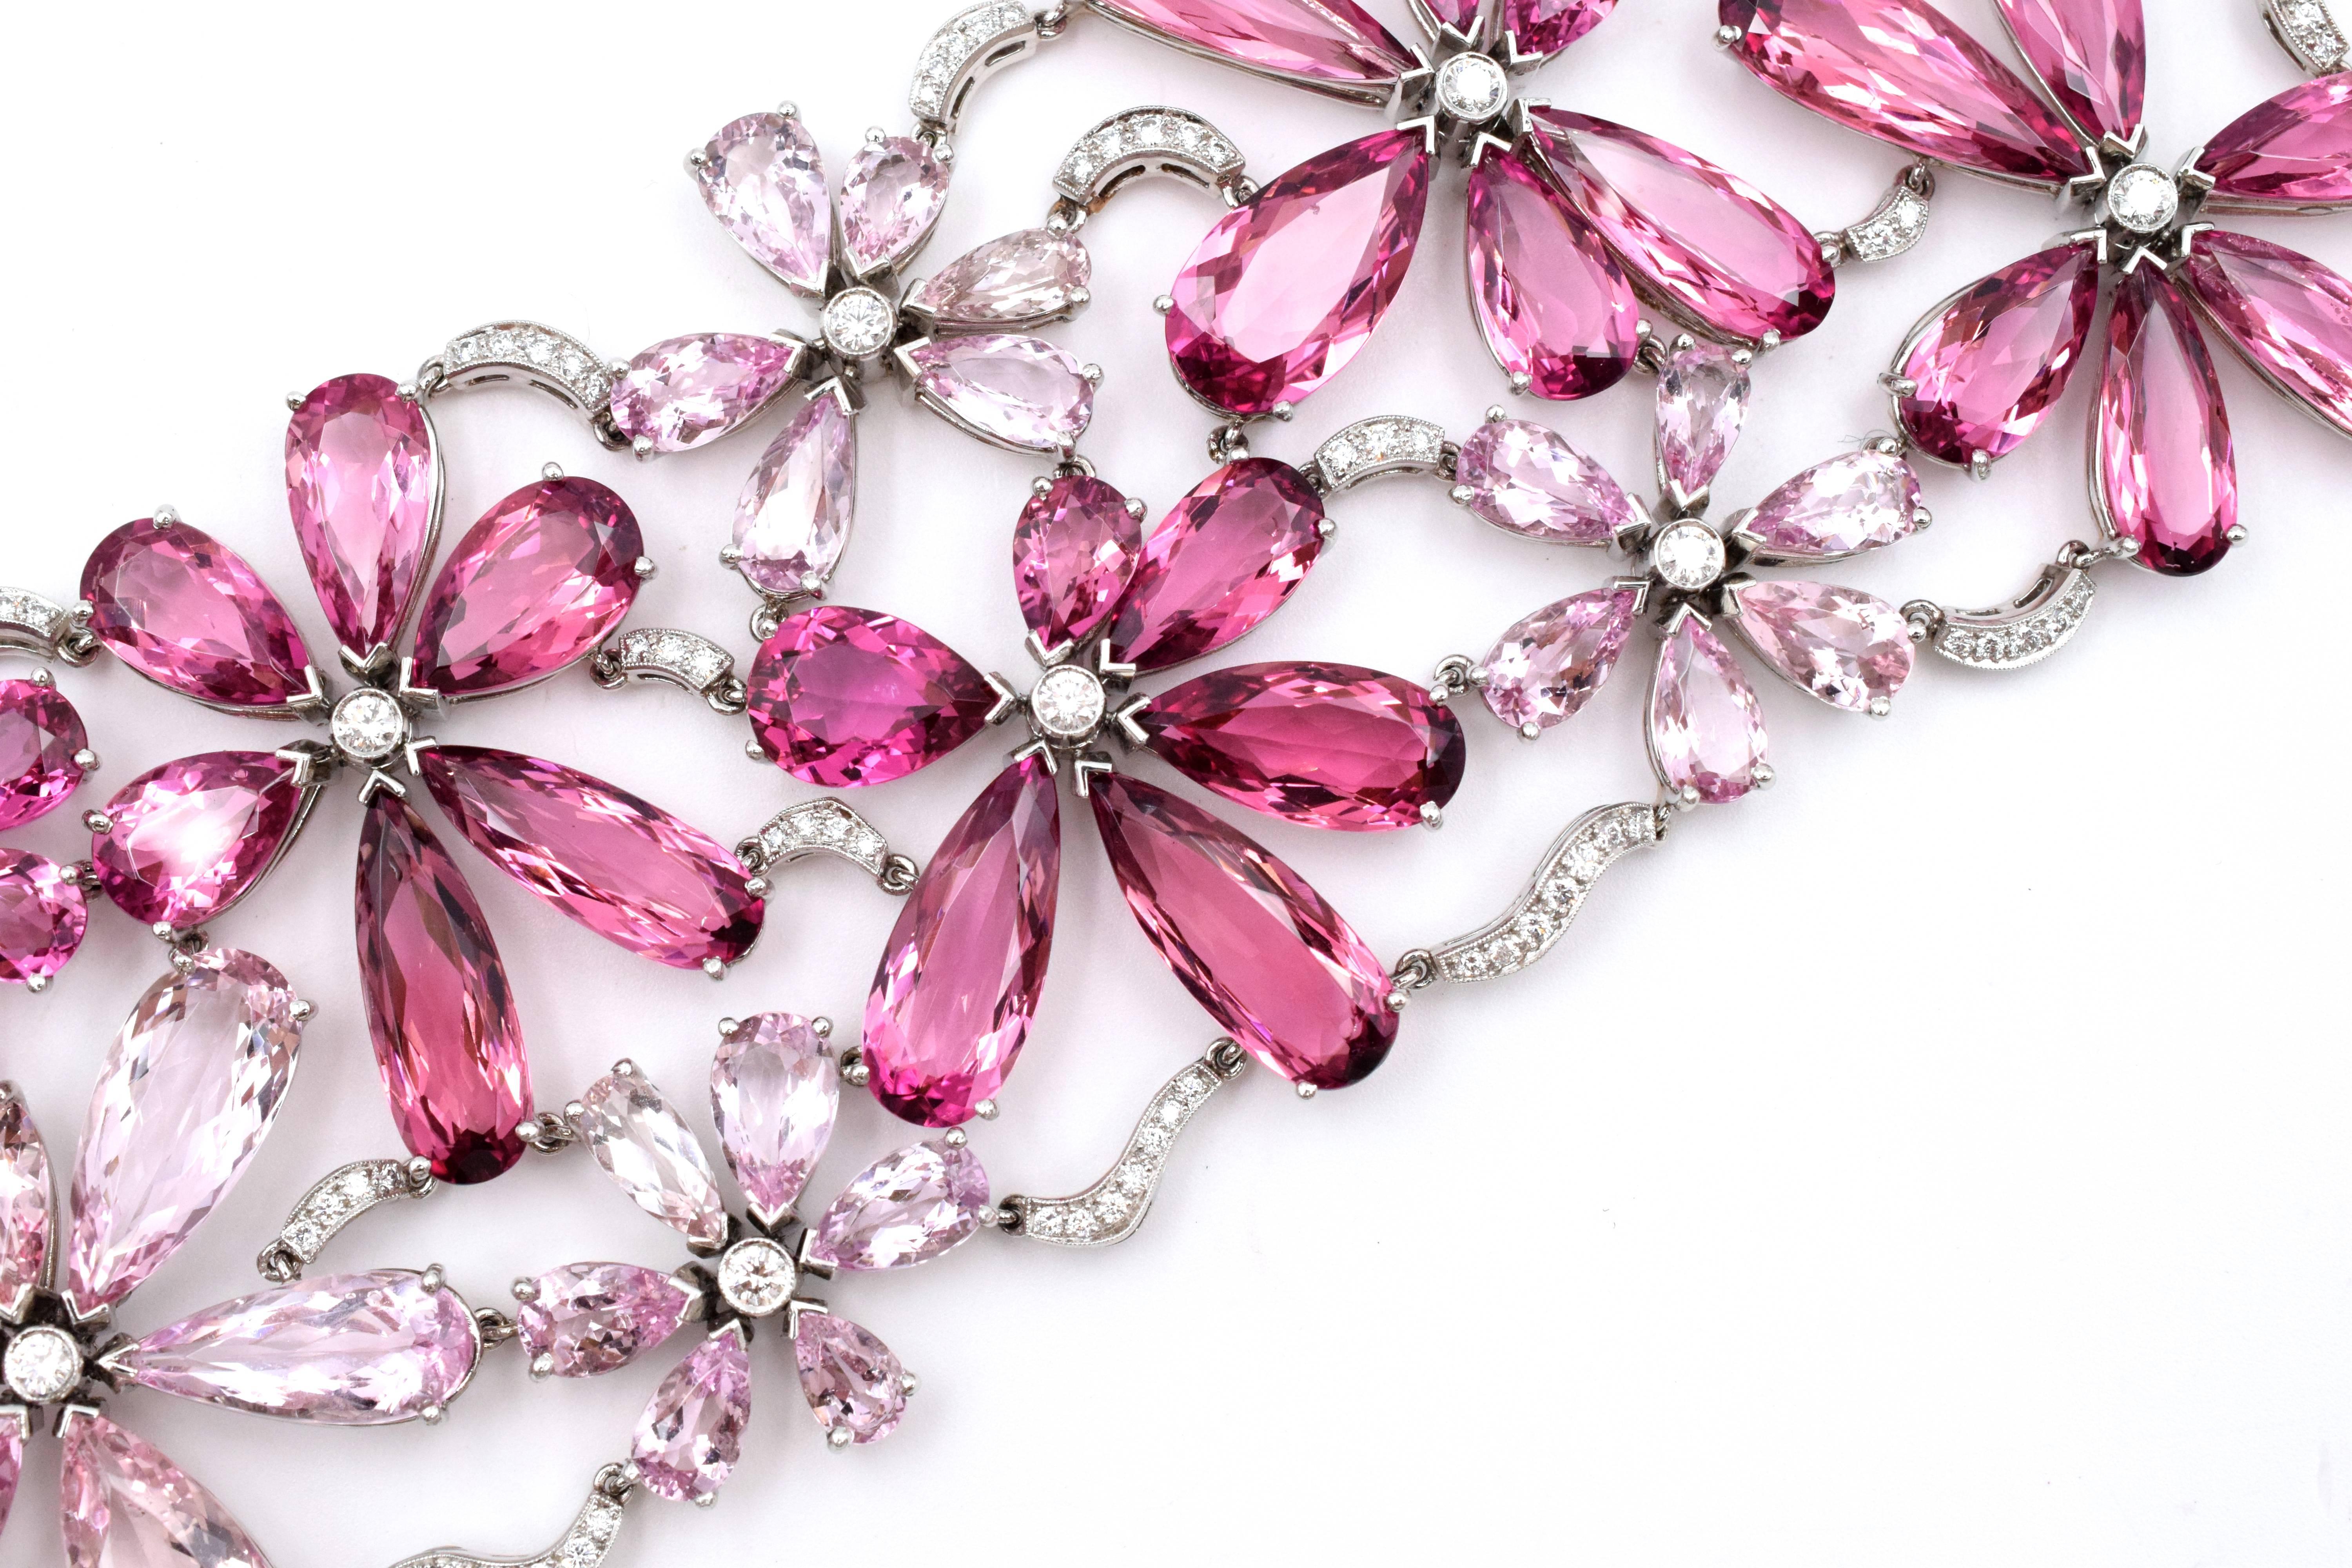 Bracelet de tourmaline rose, de morganite et de diamants de Tiffany & Co.
Ce bracelet en platine à motif floral est composé de 41 tourmalines roses en forme de poire pesant environ 87 carats, de 42 morganites en forme de poire pesant environ 48